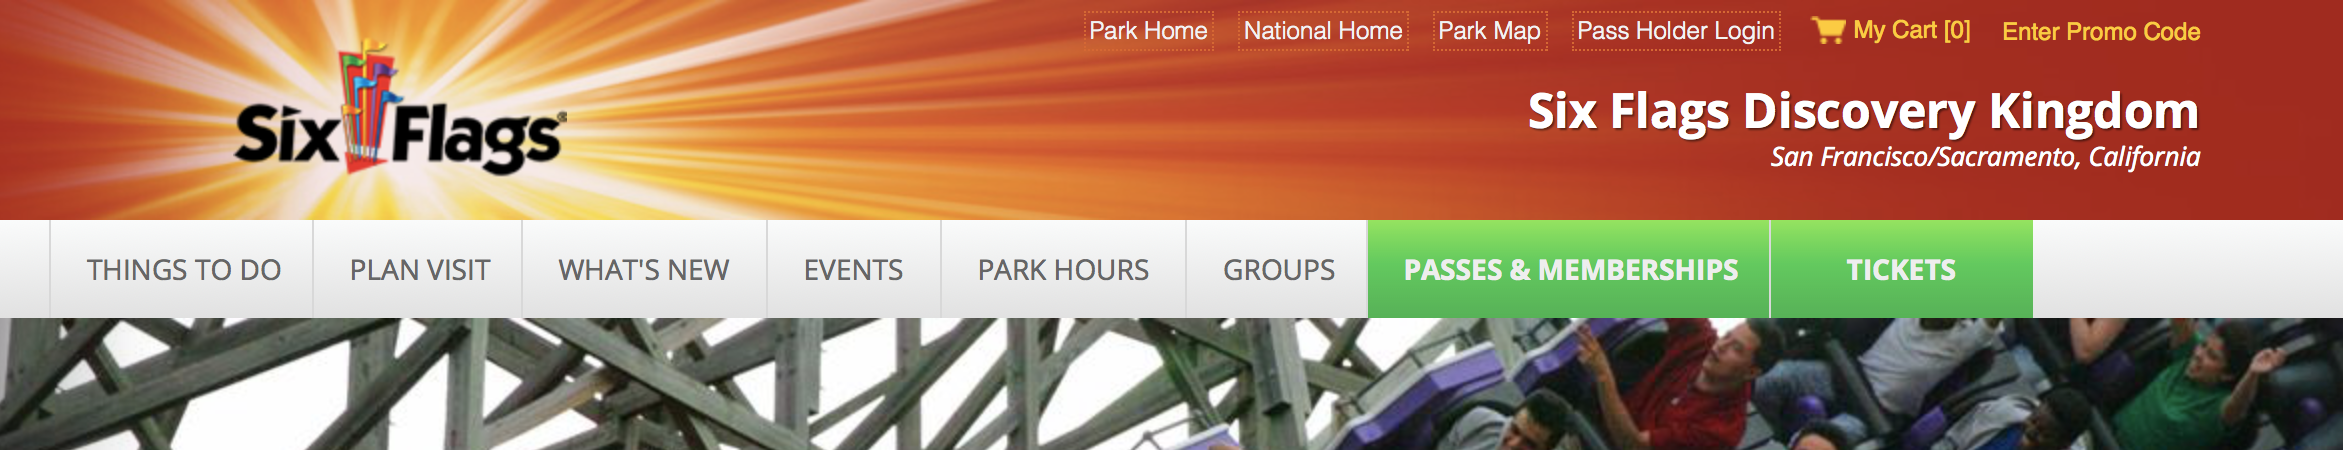 Six Flags Discovery Kingdom website navigation